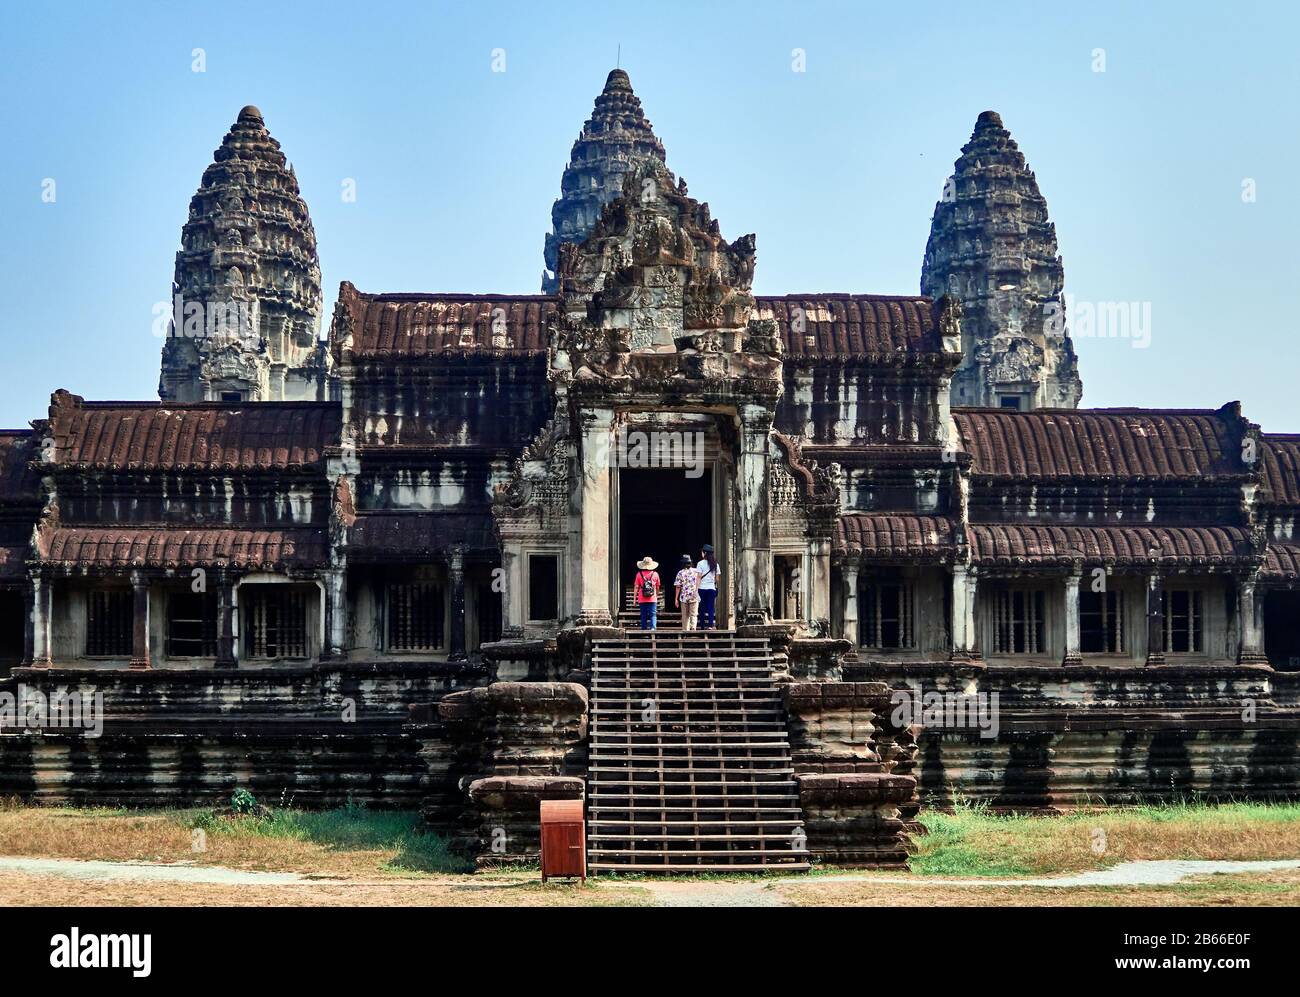 Kambodscha, Angkor Wat - erbaut von Suryavarman II (r 1112-52) - ist die irdische Darstellung des Mt Meru, des Olymp des hinduistischen Glaubens und der Abart antiker Götter. Die kambodischen gotteskönige der alten strebten jeweils an, die Strukturen ihrer Vorfahren in Größe, Maßstab und Symmetrie zu verbessern, was in dem gipfelte, was als das größte religiöse Gebäude der Welt gilt. Stockfoto